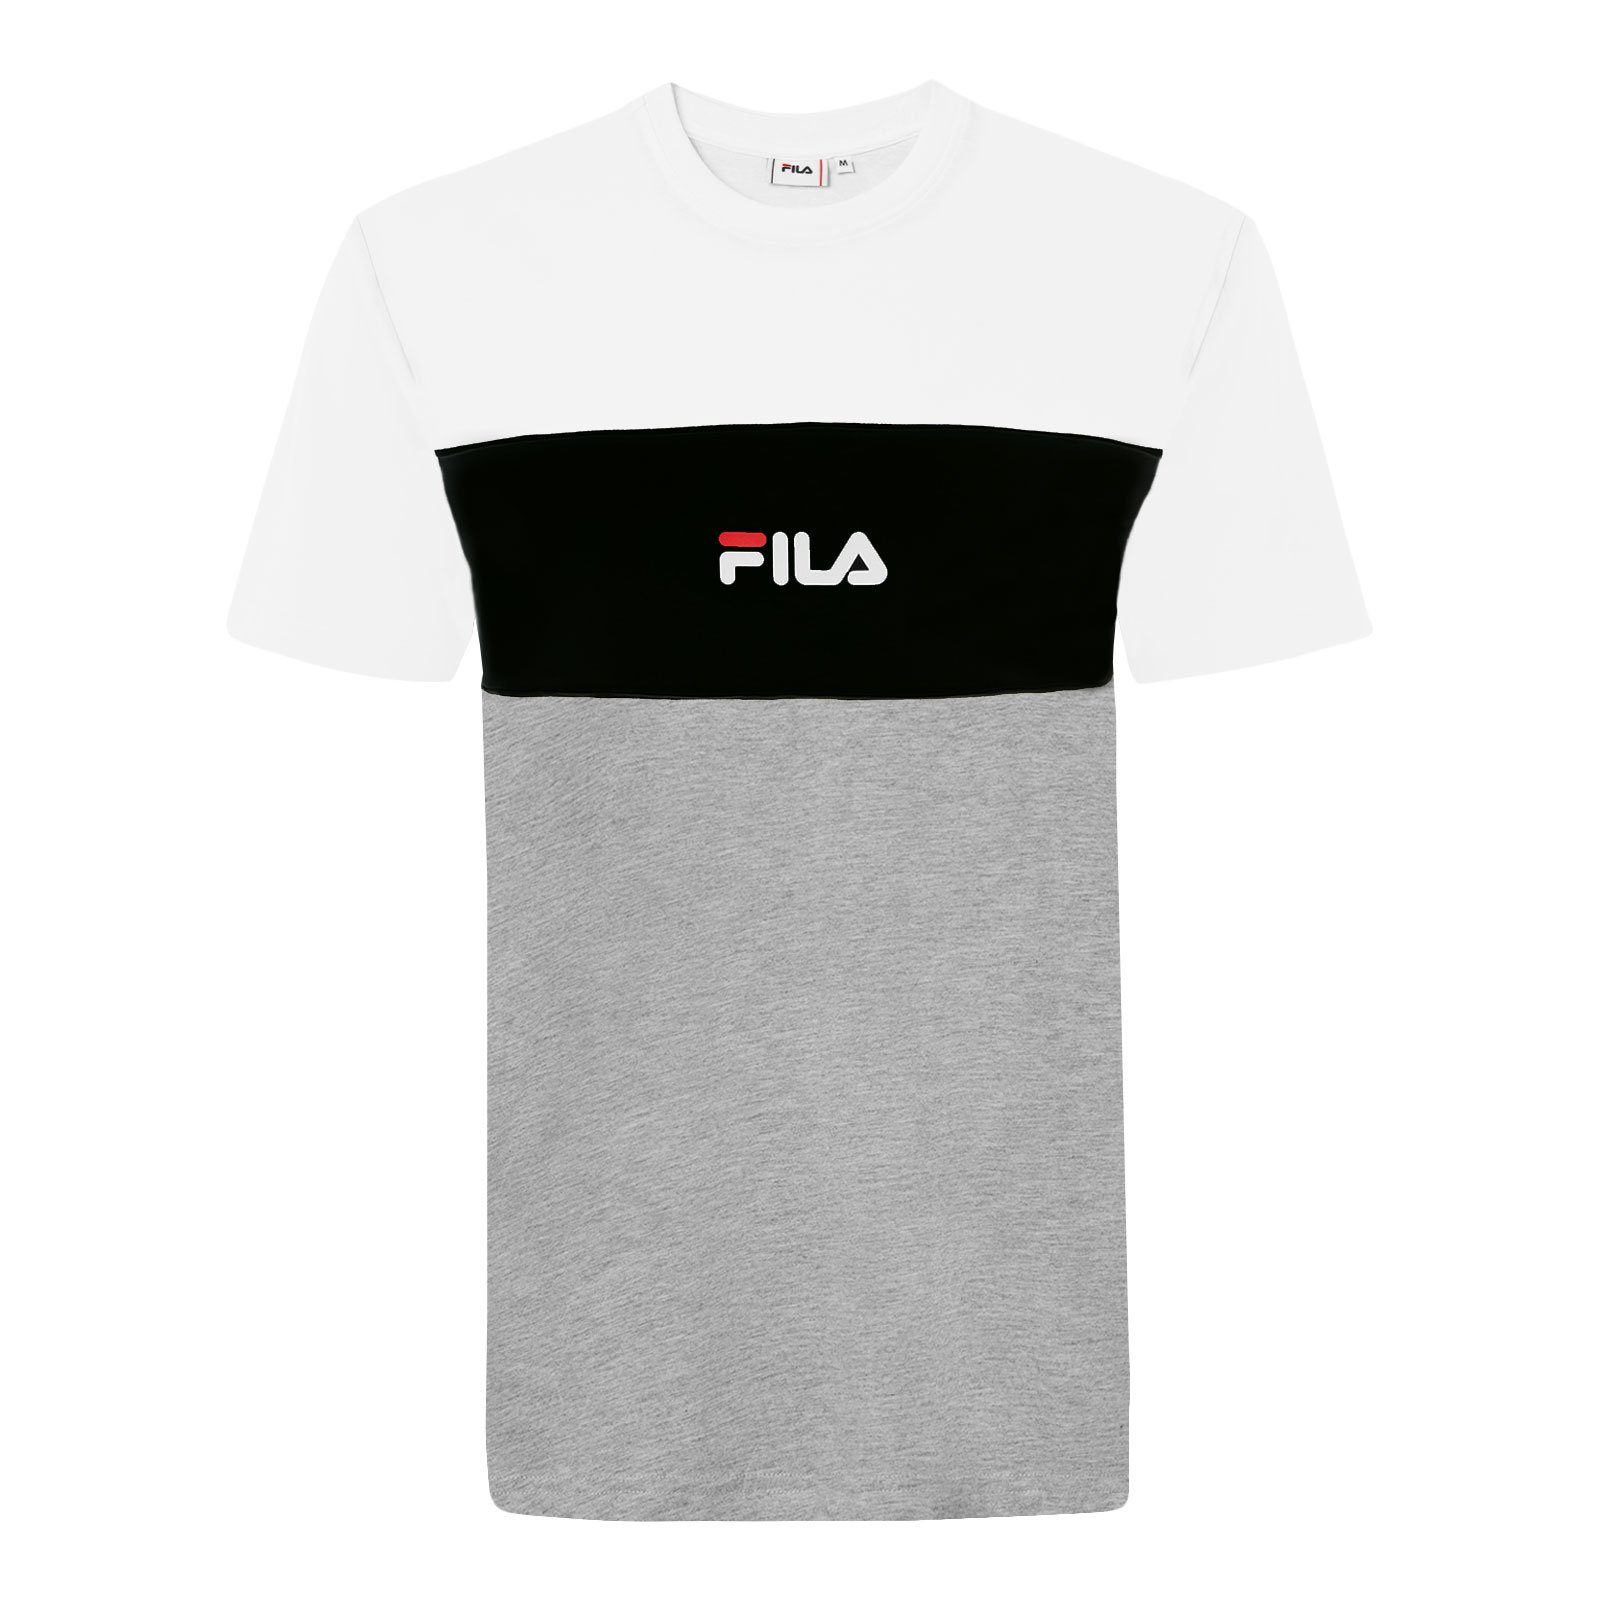 Fila T-Shirt Men Anoki Tee Blocked black Markenschriftzug grey white / A495 light mit melange bright bros 